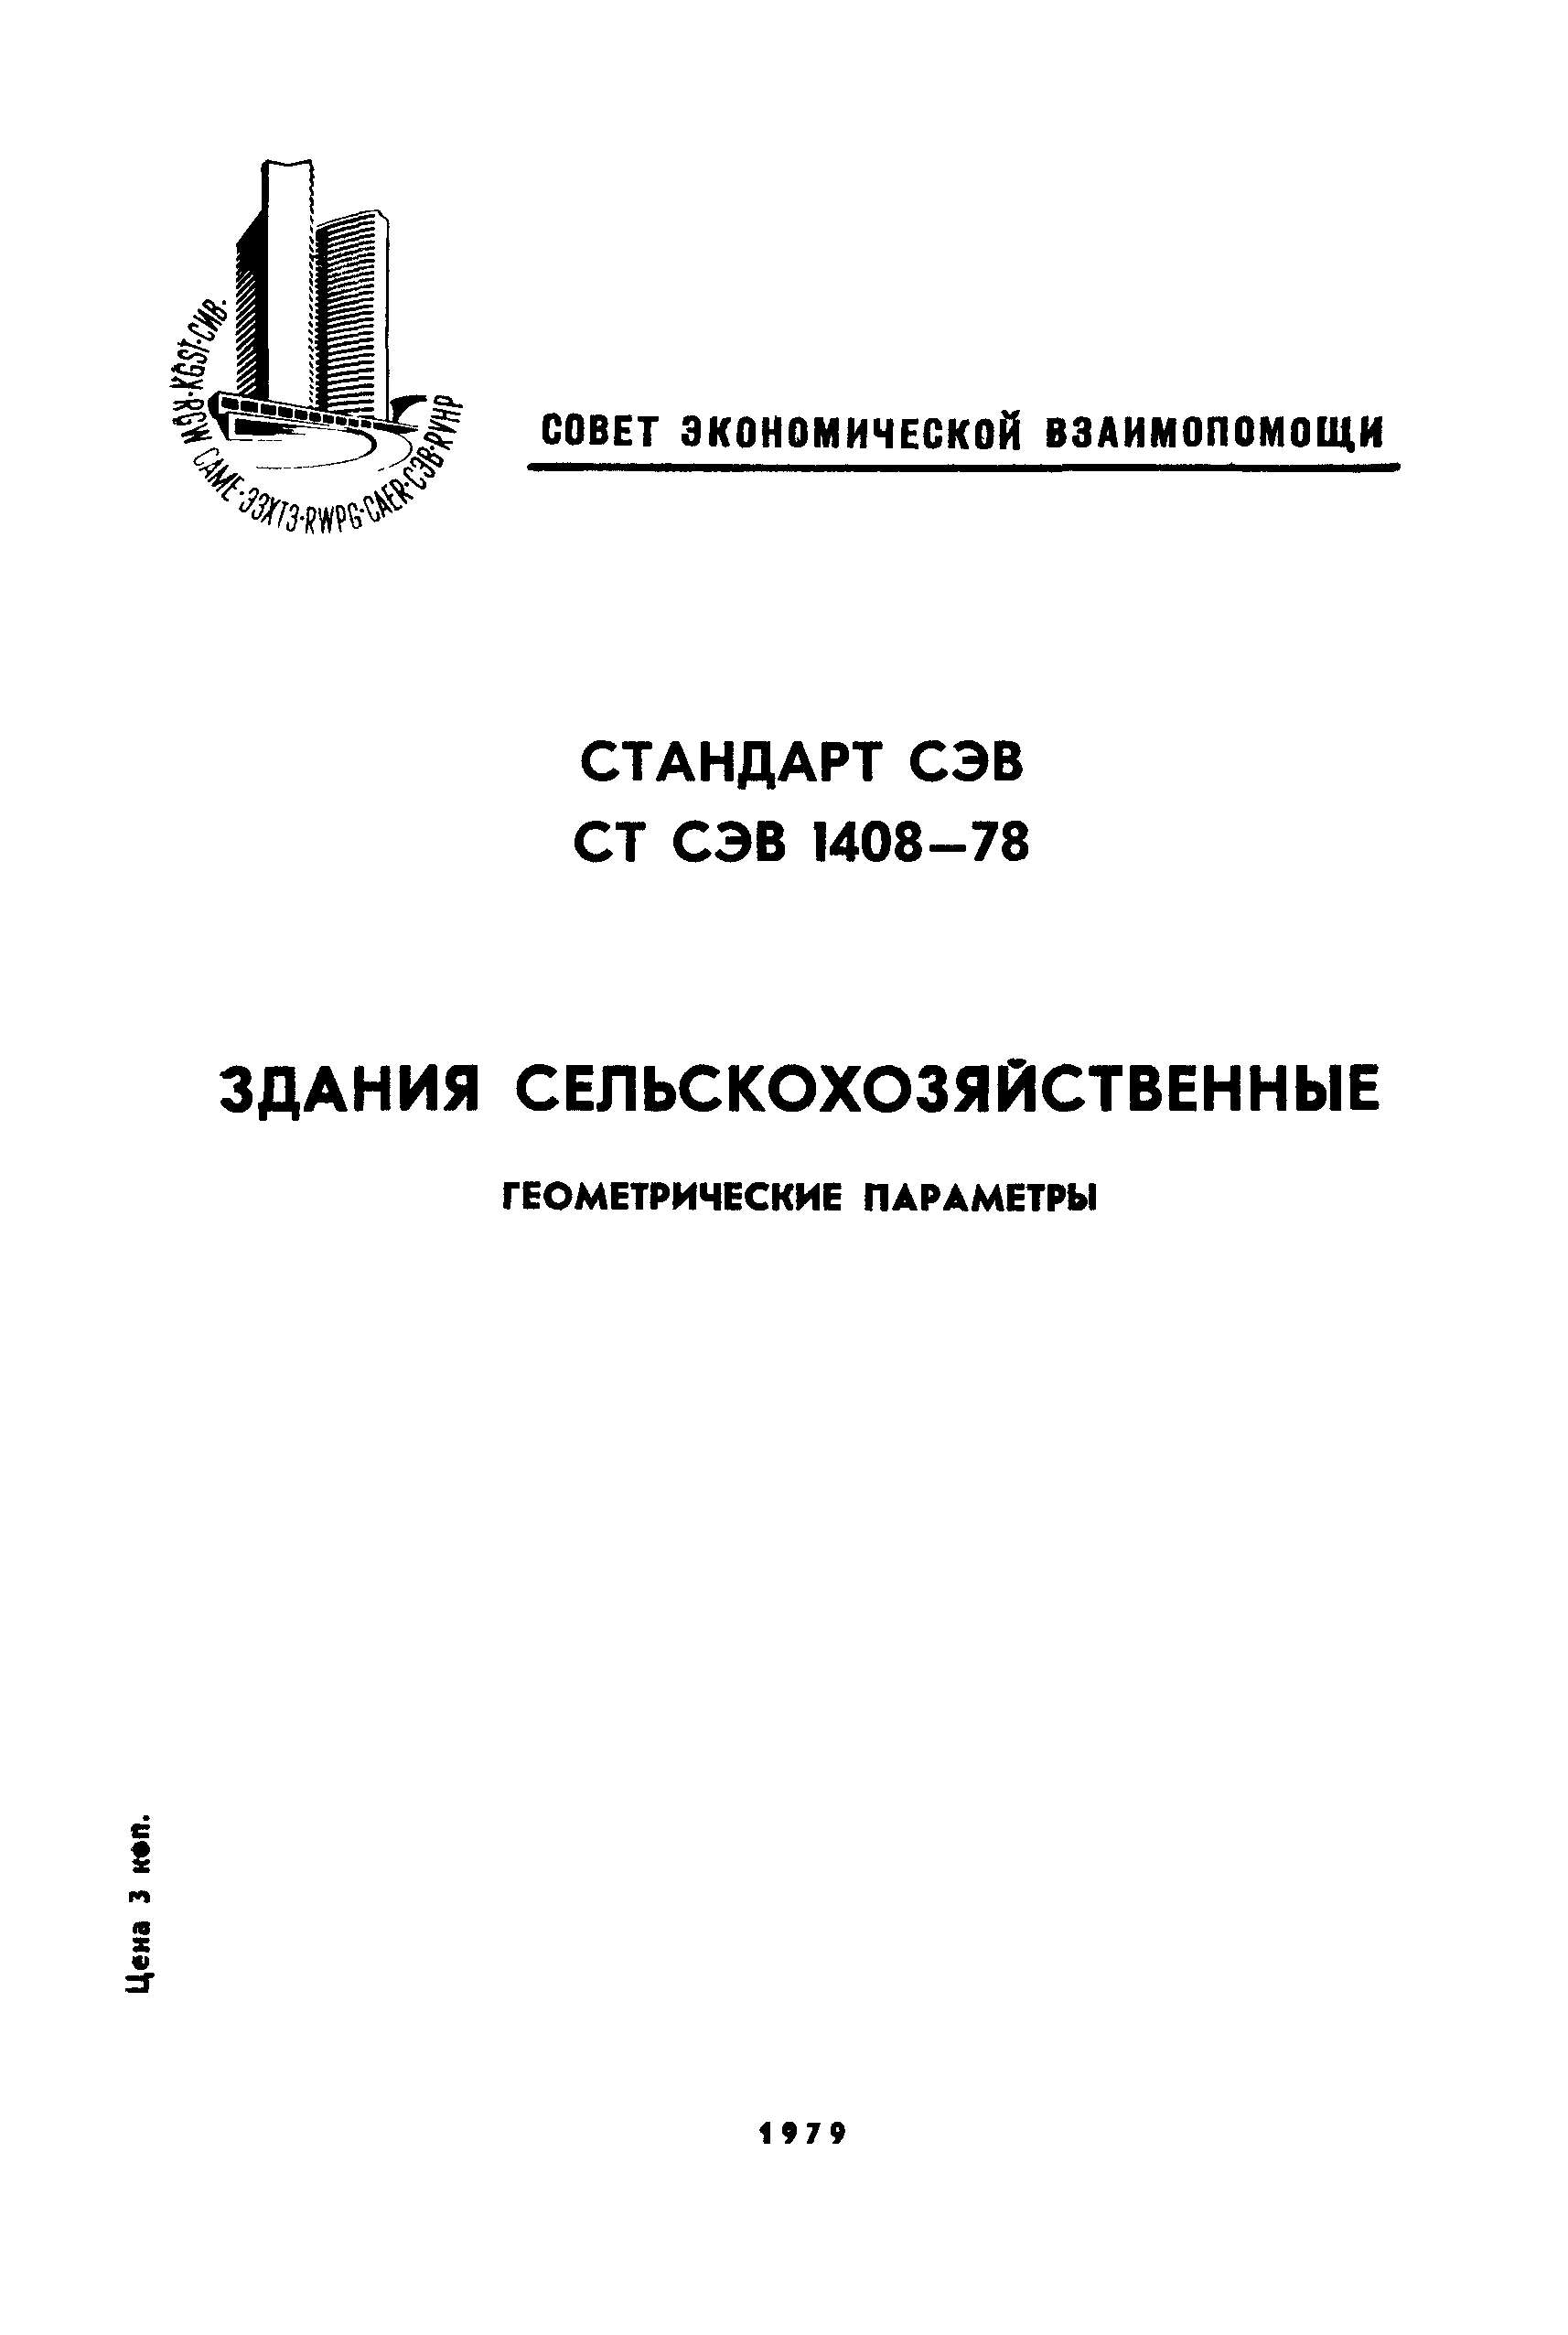 СТ СЭВ 1408-78